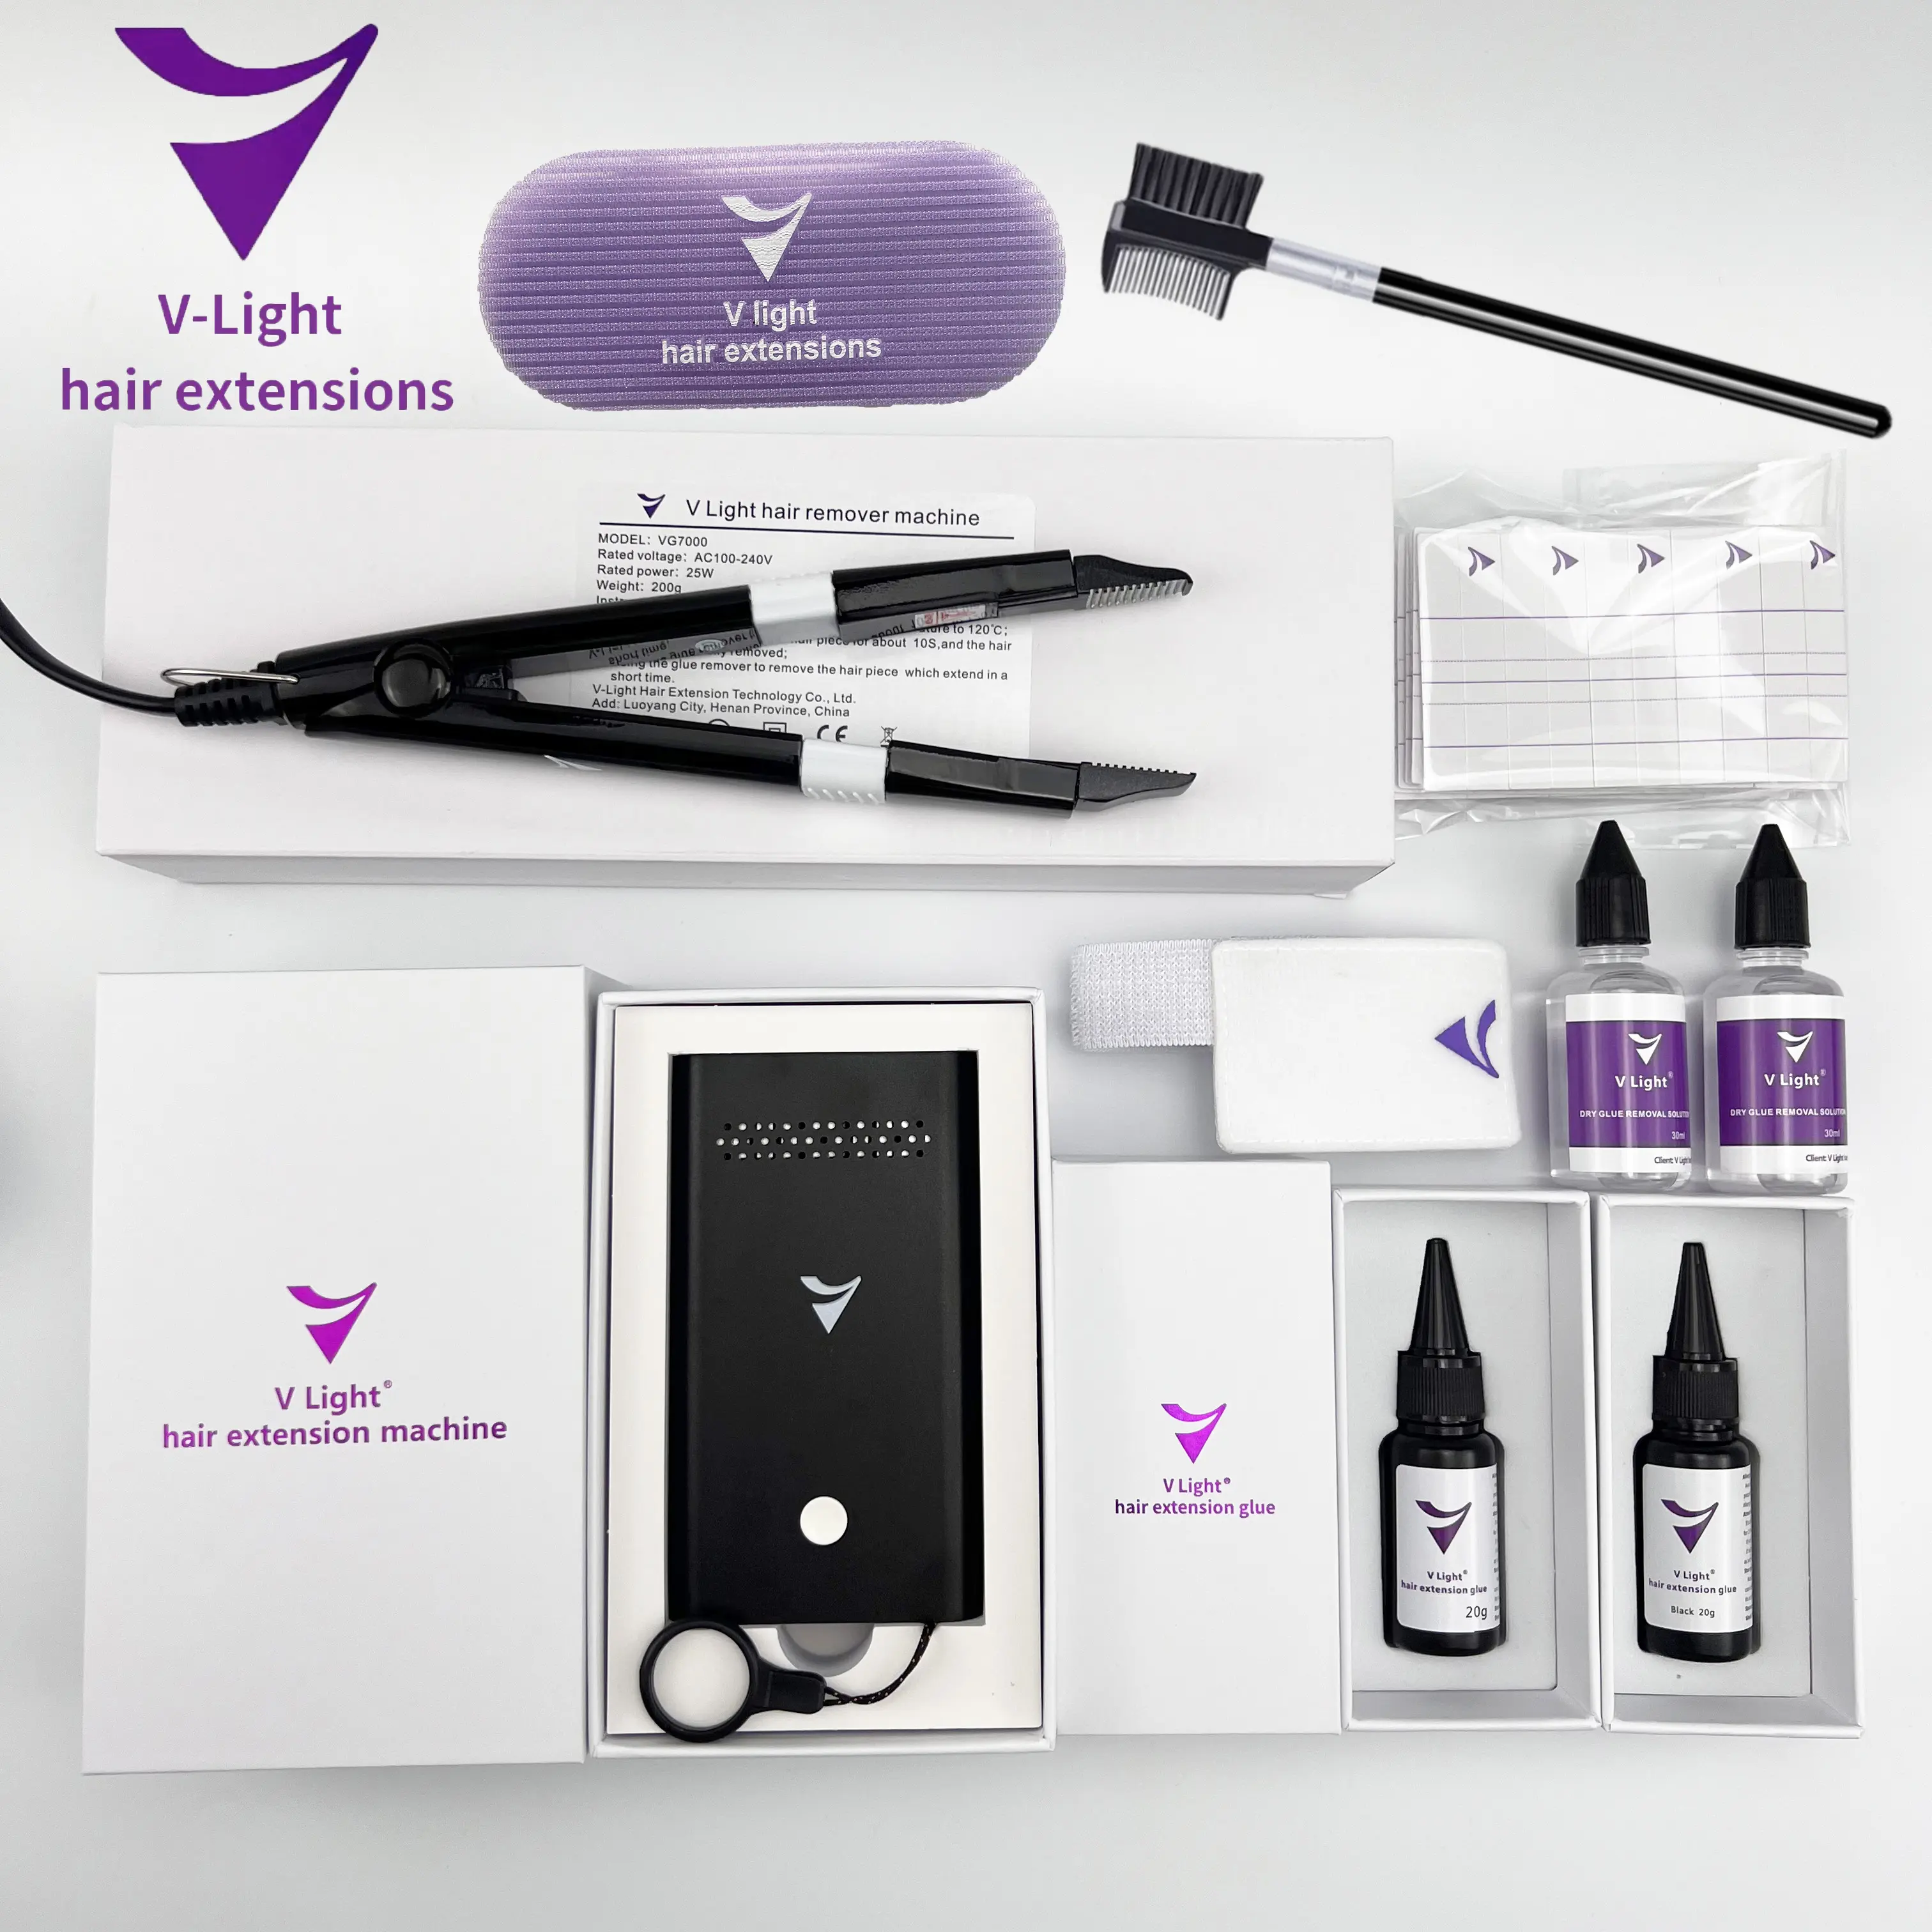 V Light Hair Extension Company dernière technologie peut compléter la nouvelle extension de cheveux v Light